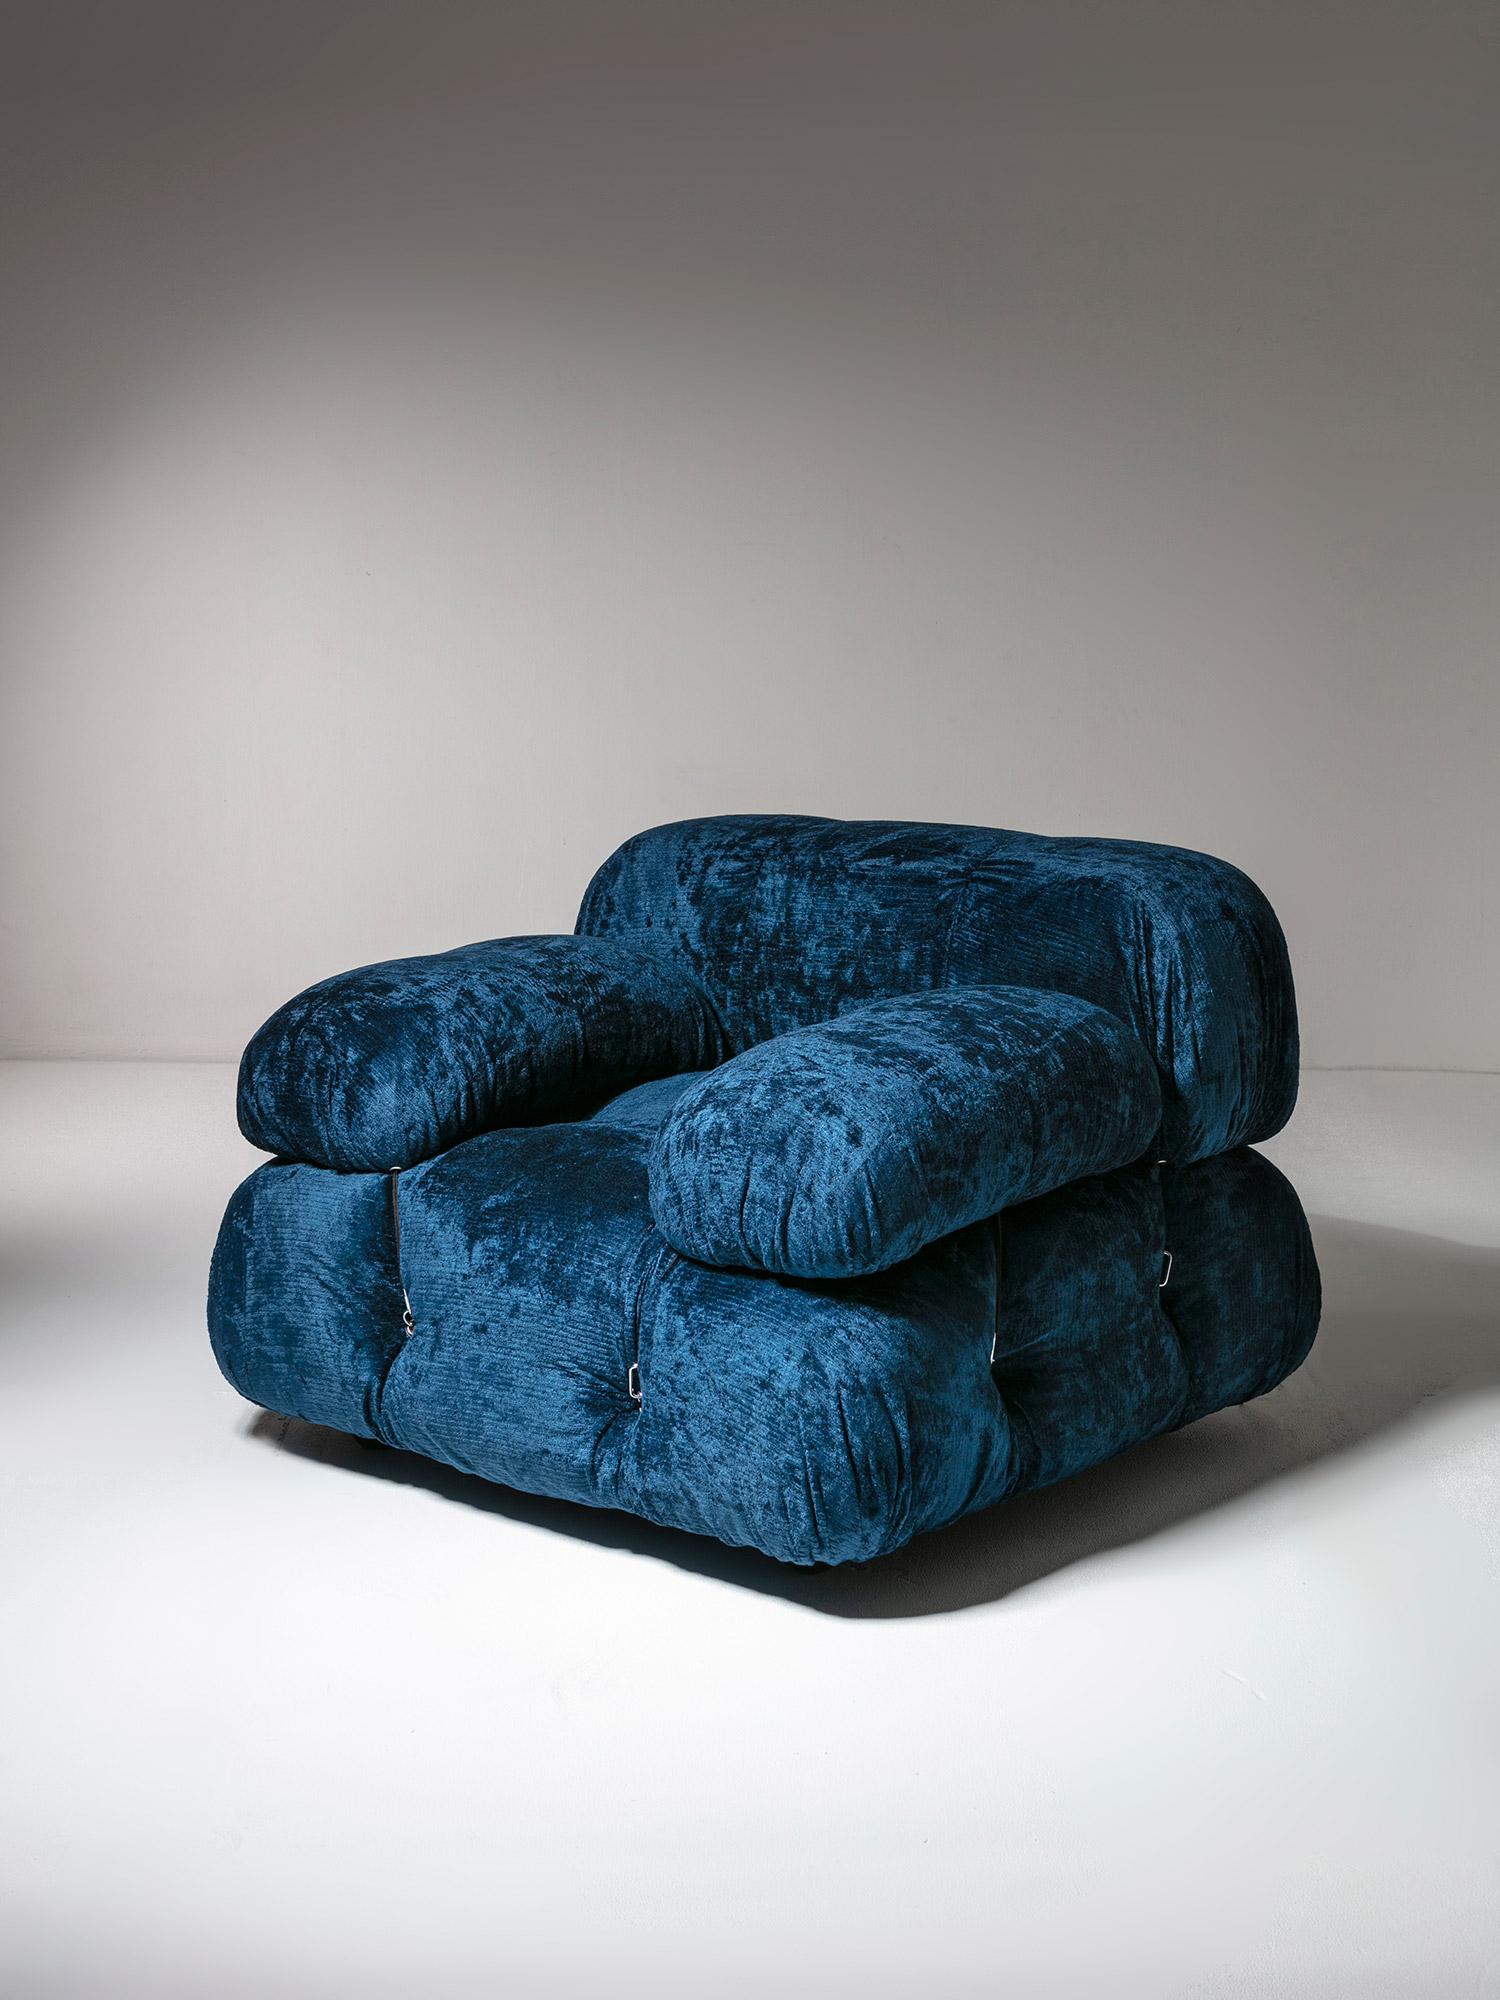 Rare chaise longue Camaleonda de Mario Bellini pour B&B.
Édition des années 70, étiquetée et recouverte de chenille bleue.
Un canapé assorti est également disponible, consultez notre inventaire.